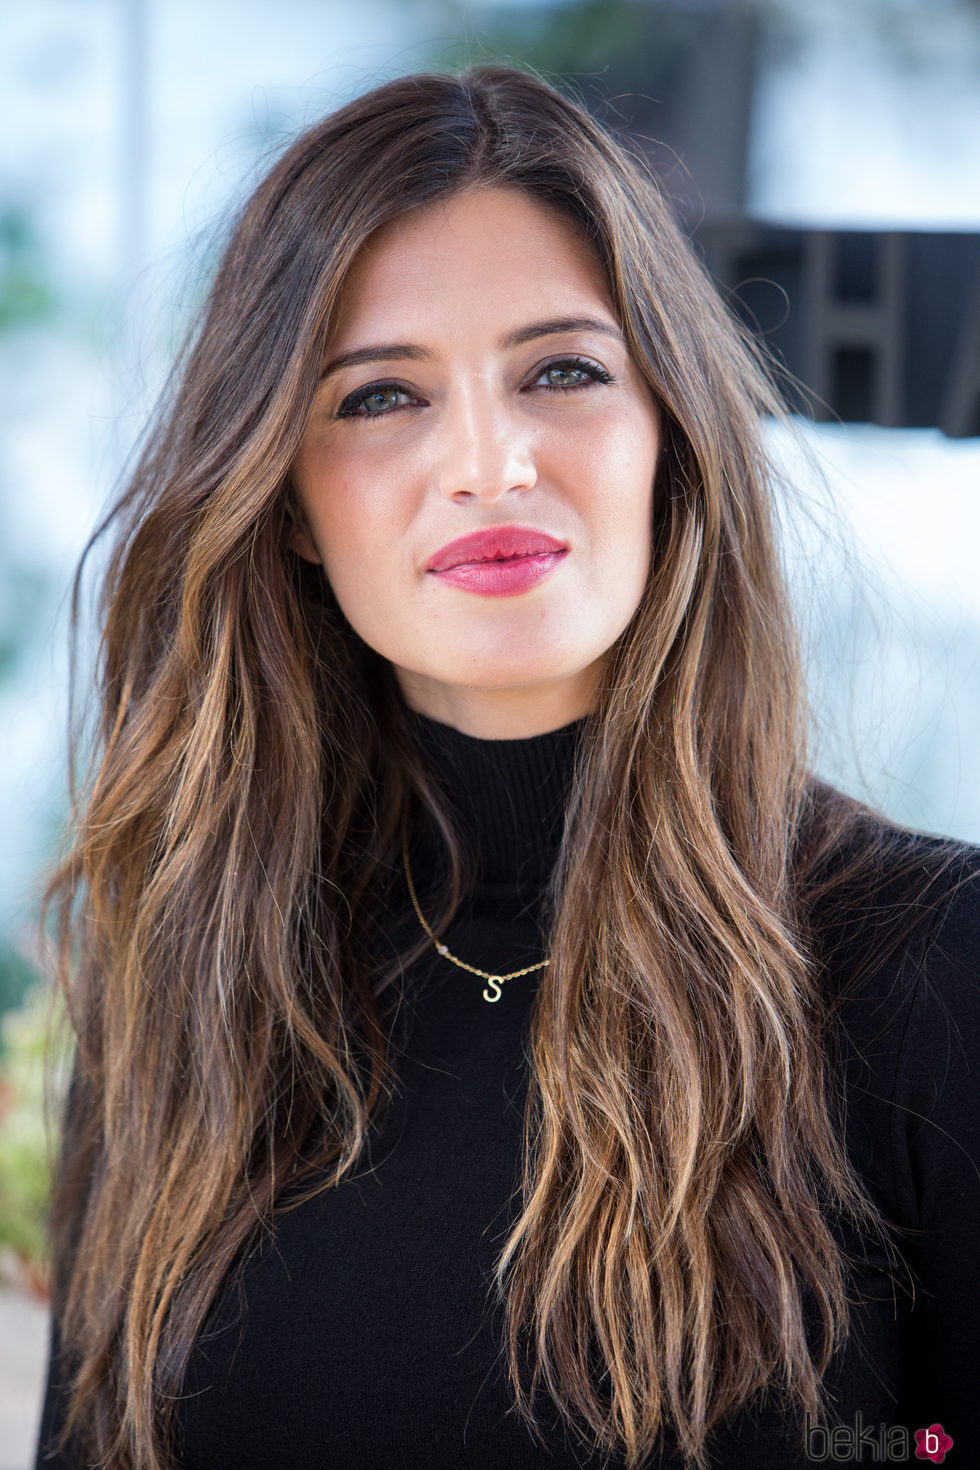 Sara Carbonero centra la atención de su maquillaje en sus labios